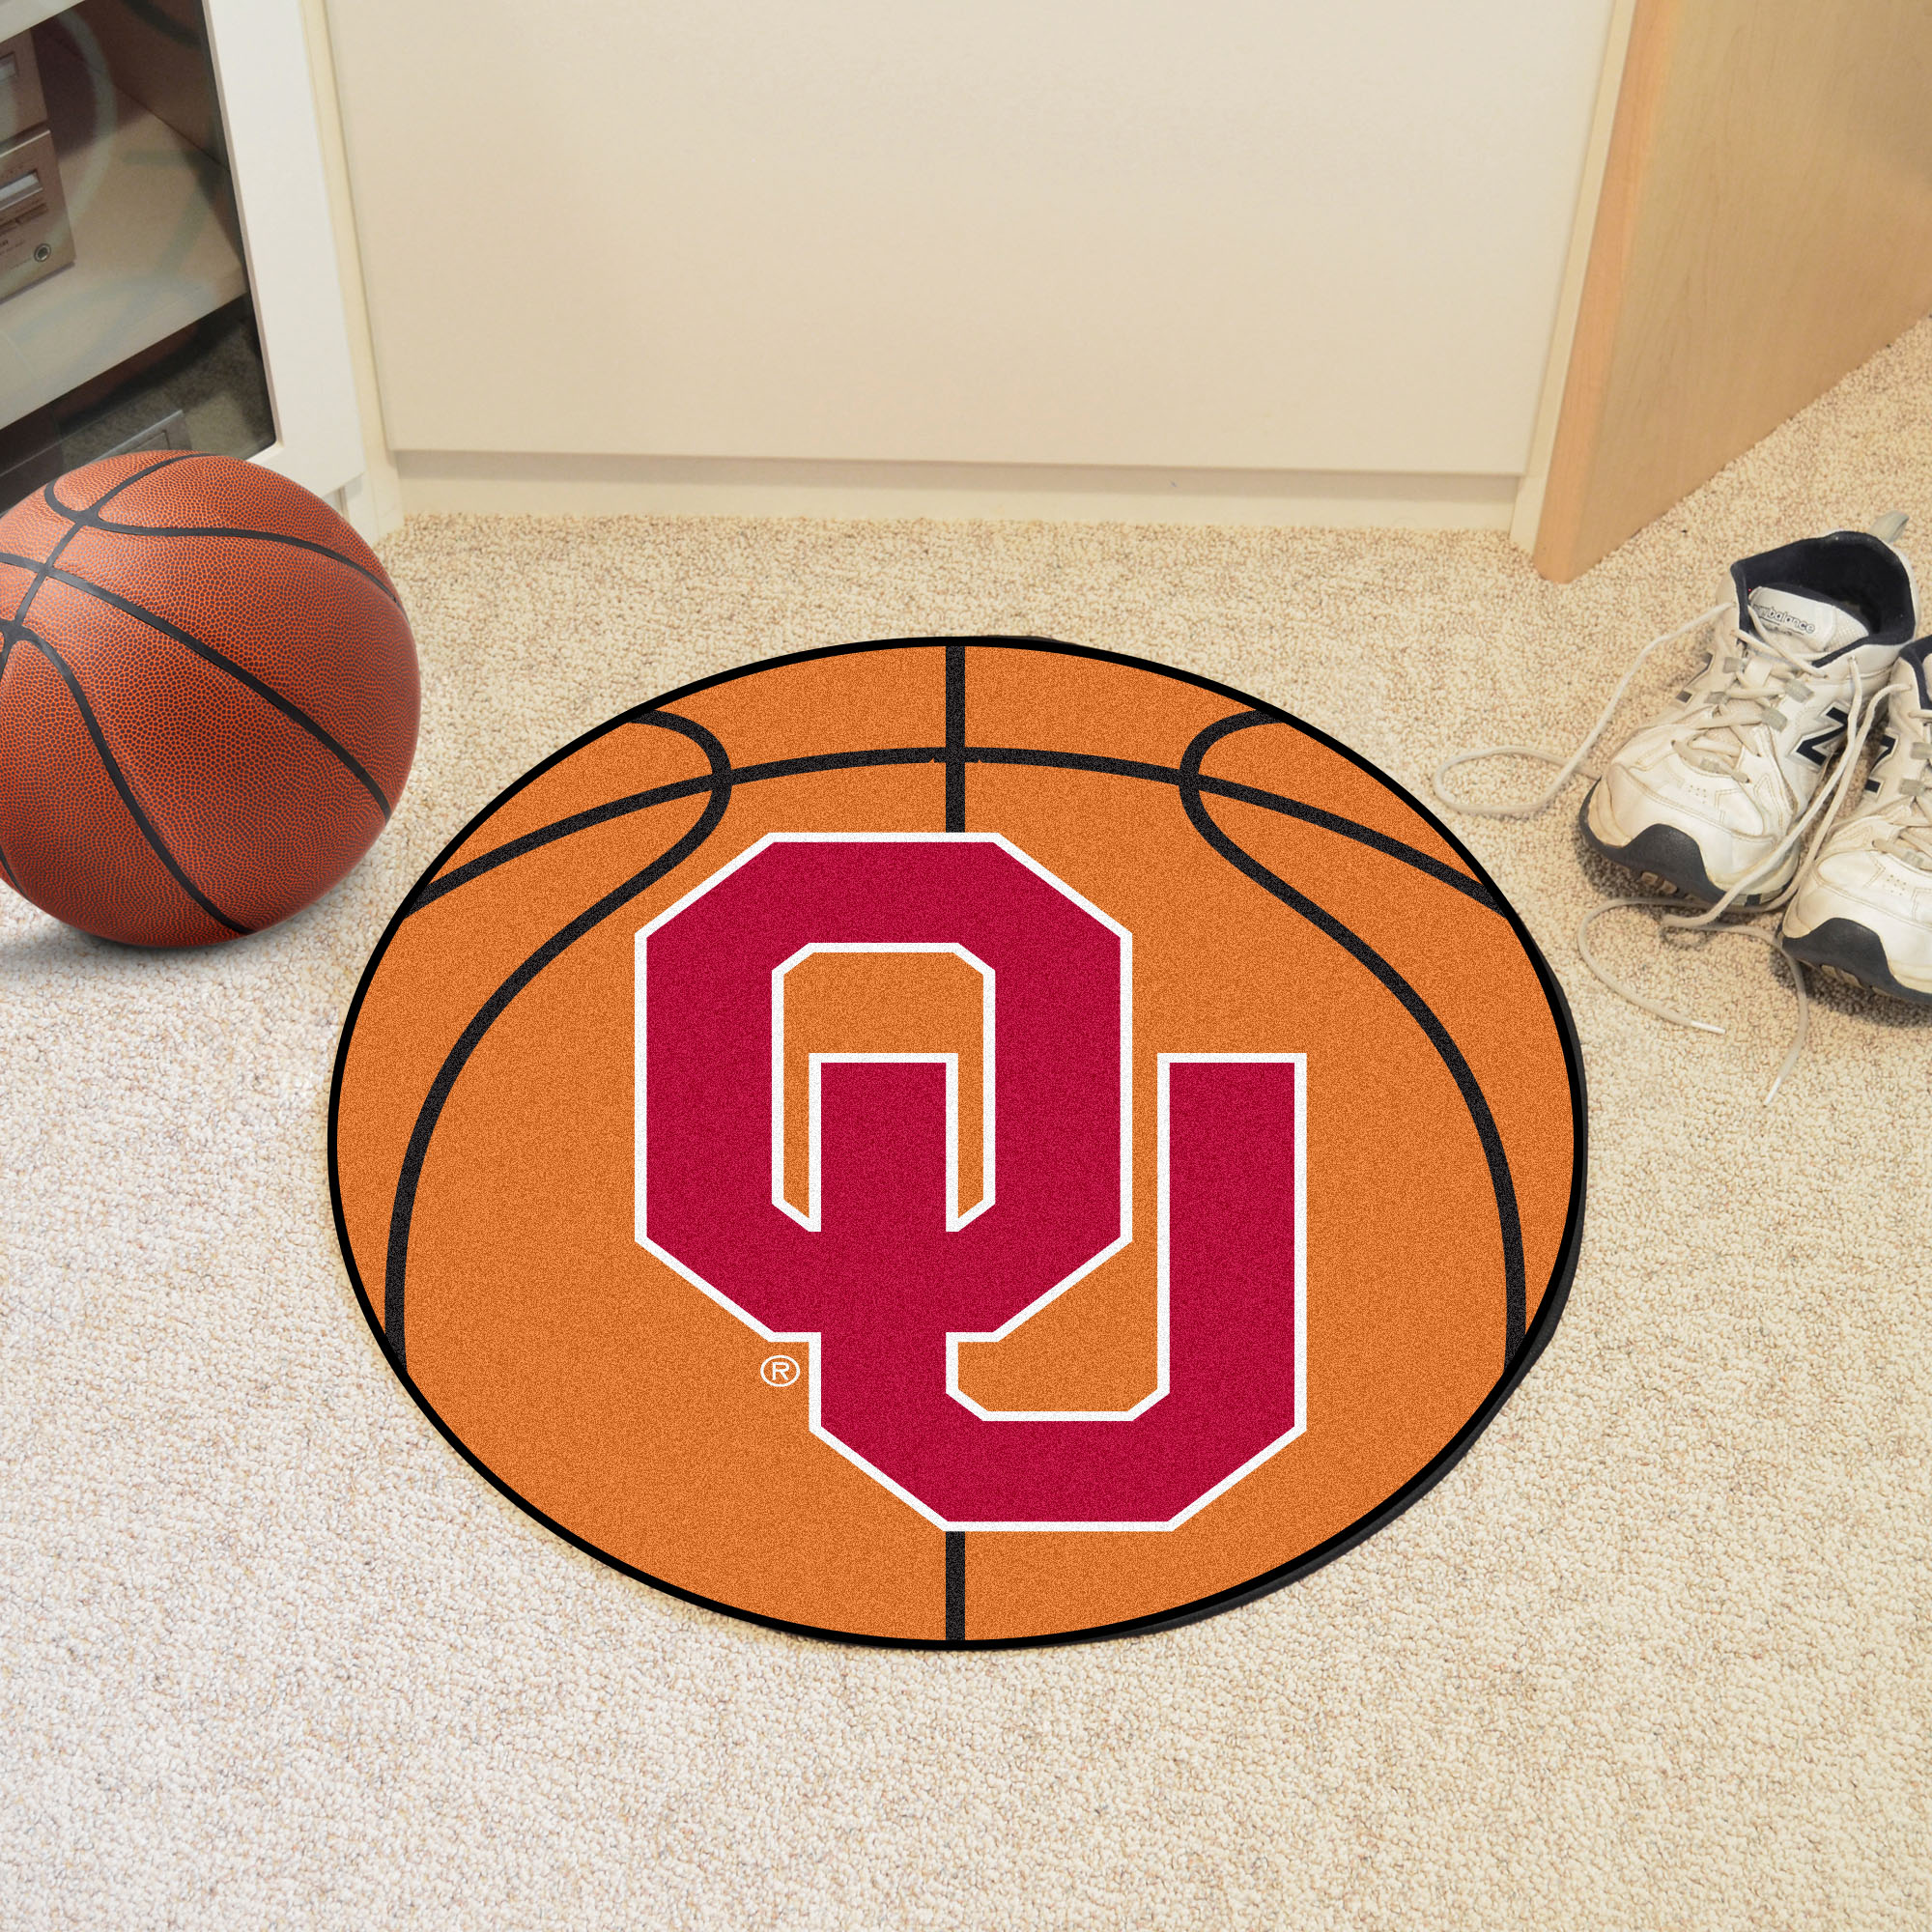 University of Oklahoma Ball Shaped Area Rugs (Ball Shaped Area Rugs: Basketball)